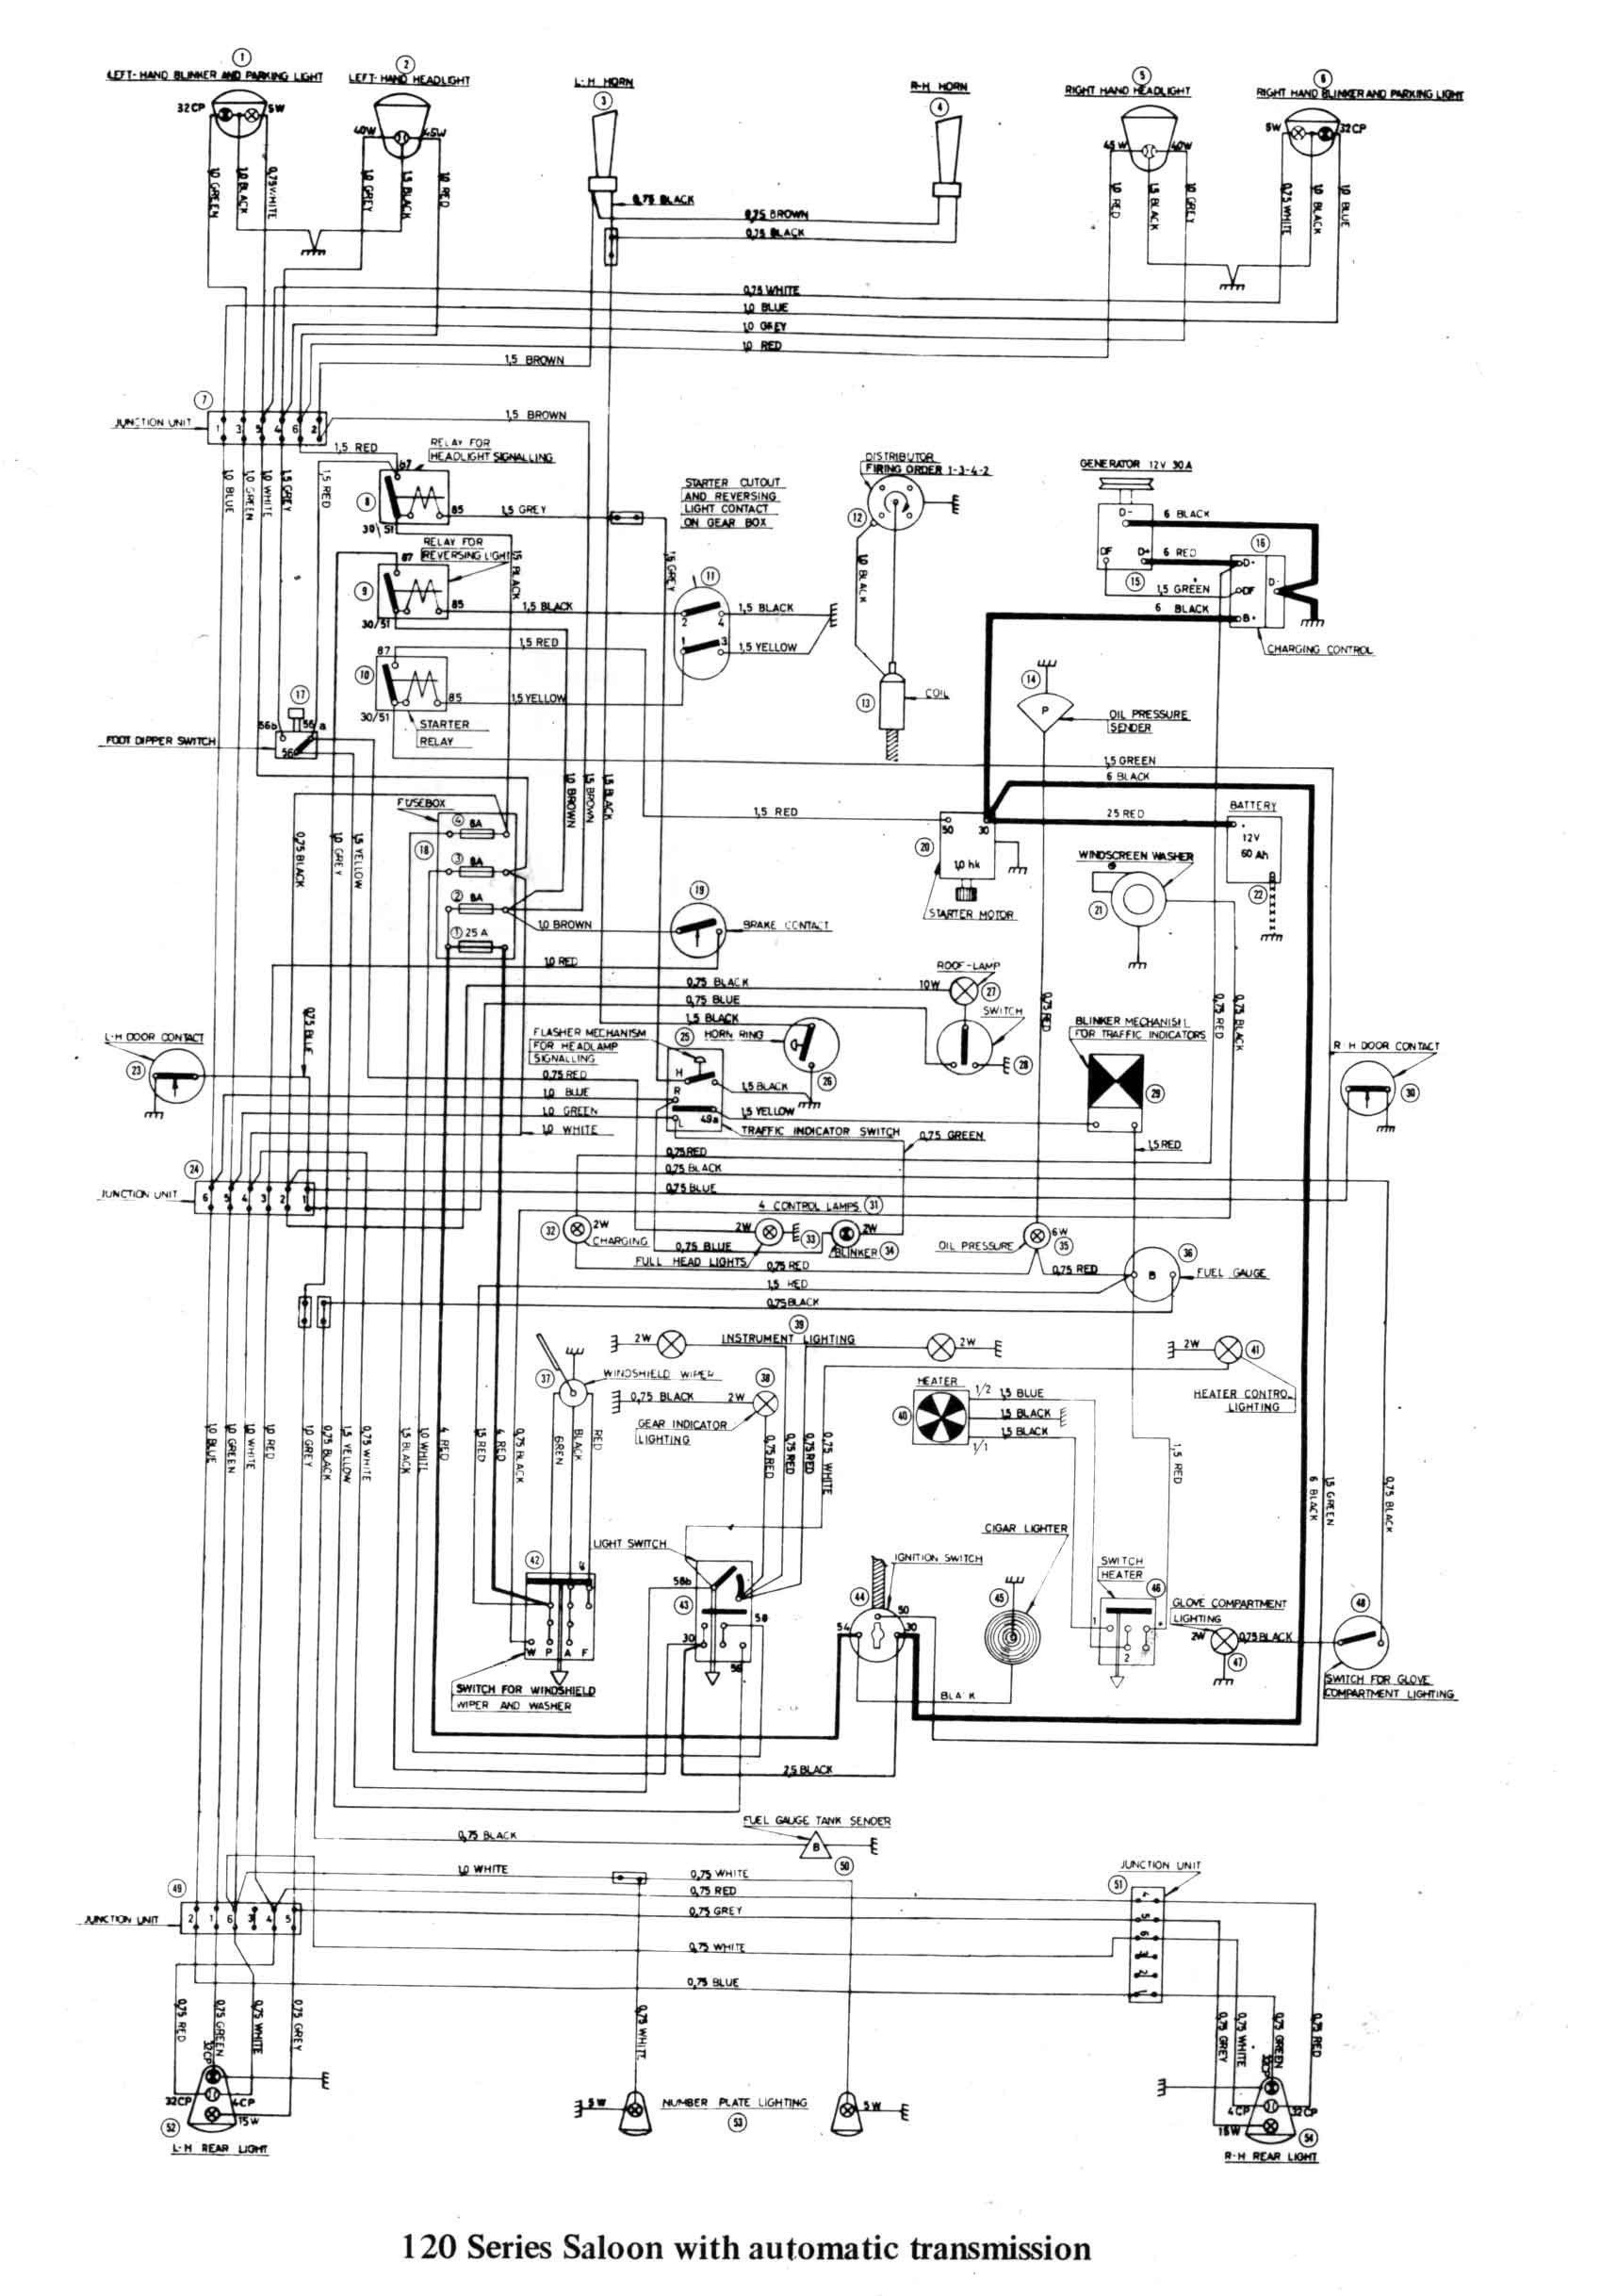 1996 Lexus Es300 Engine Diagram Lexus Alternator Wiring Diagram Detailed Schematics Diagram Of 1996 Lexus Es300 Engine Diagram